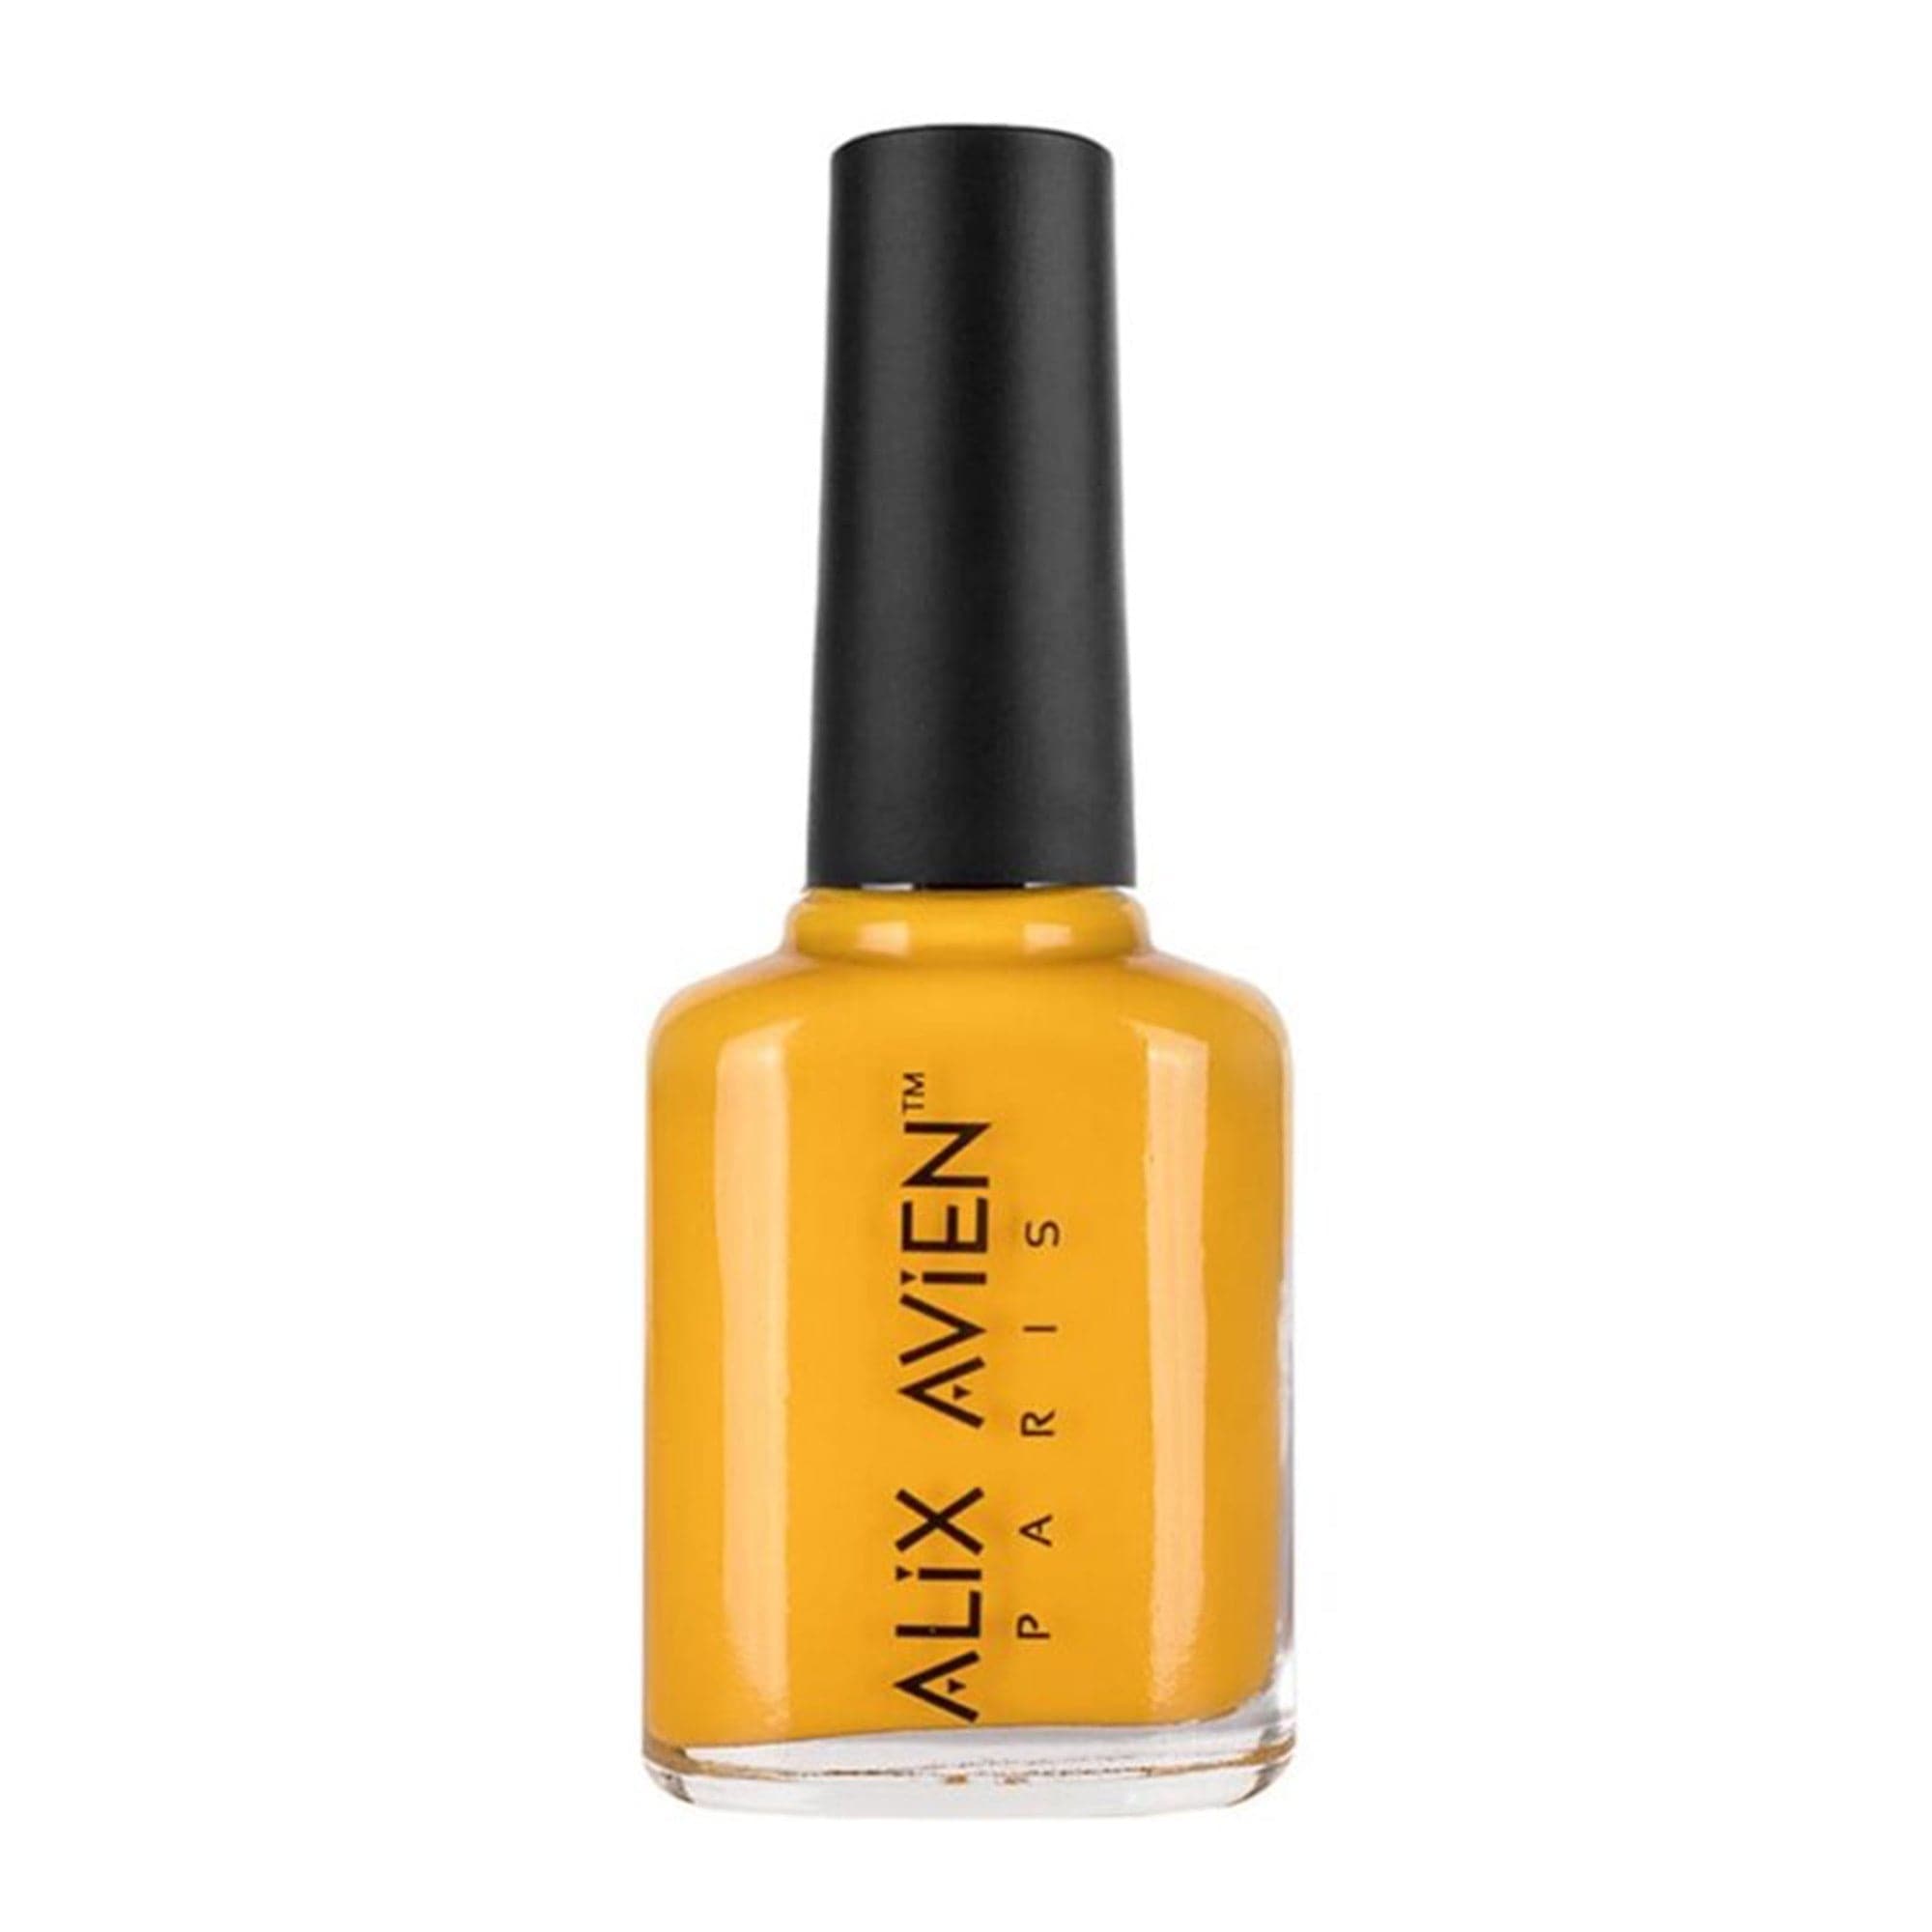 Alix Avien - Nail Polish No.68 (Bumblebee Yellow)